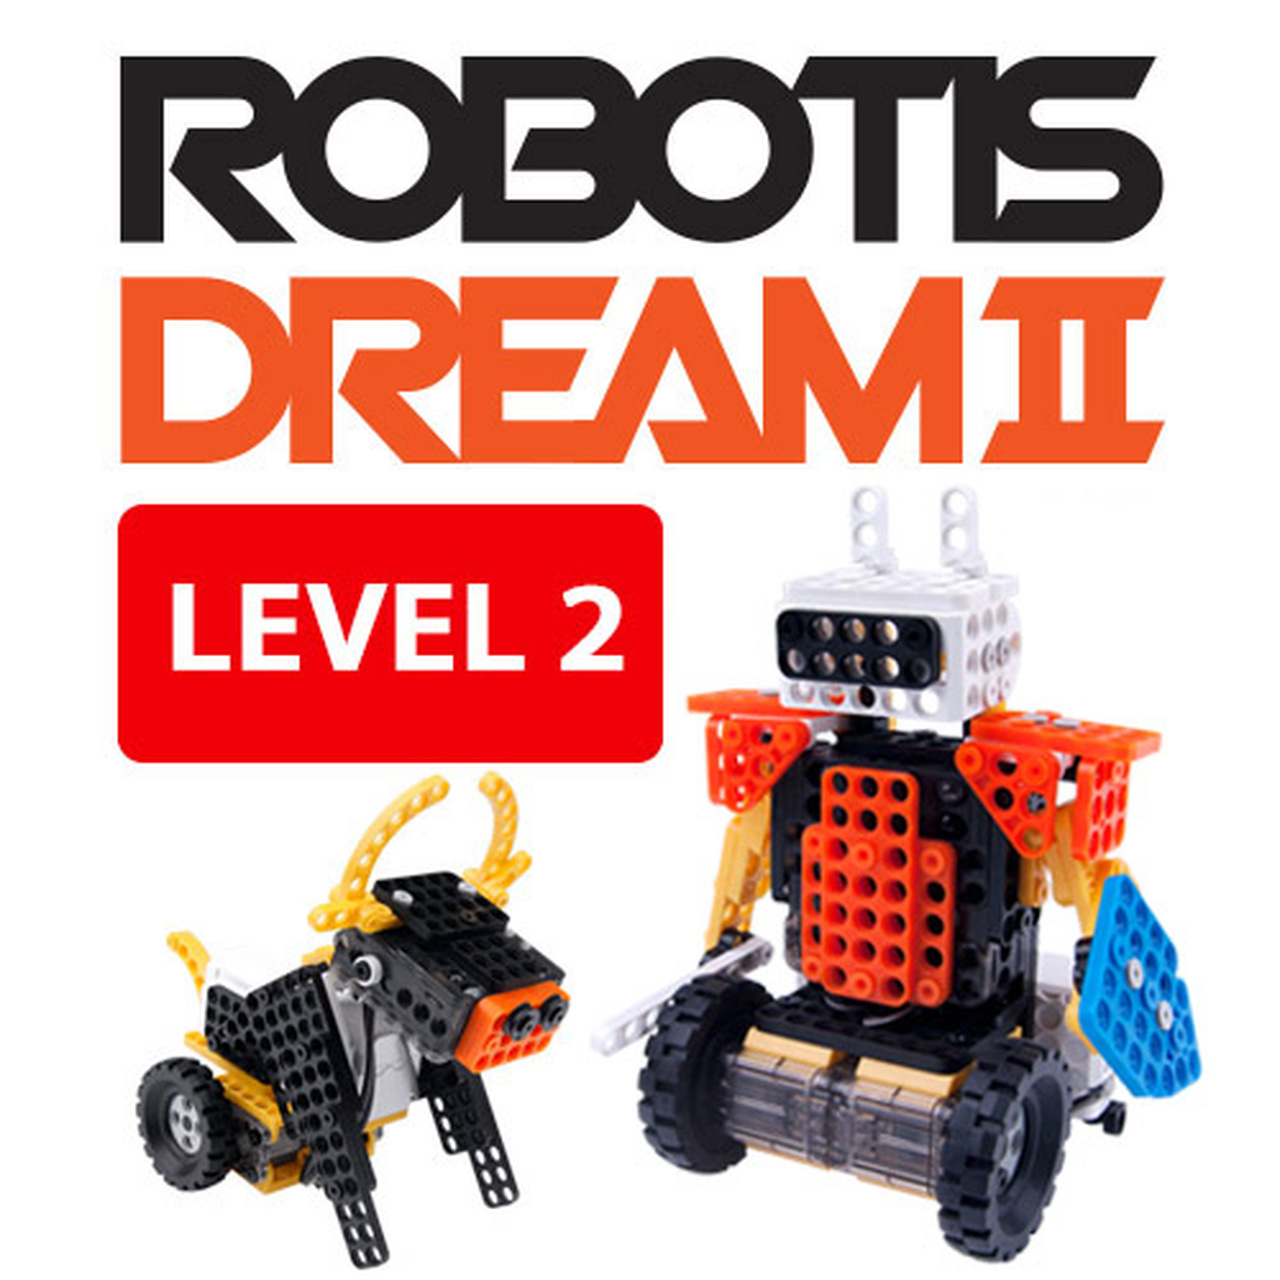 ROBOTIS DREAMⅡ Level 1 Kit EN